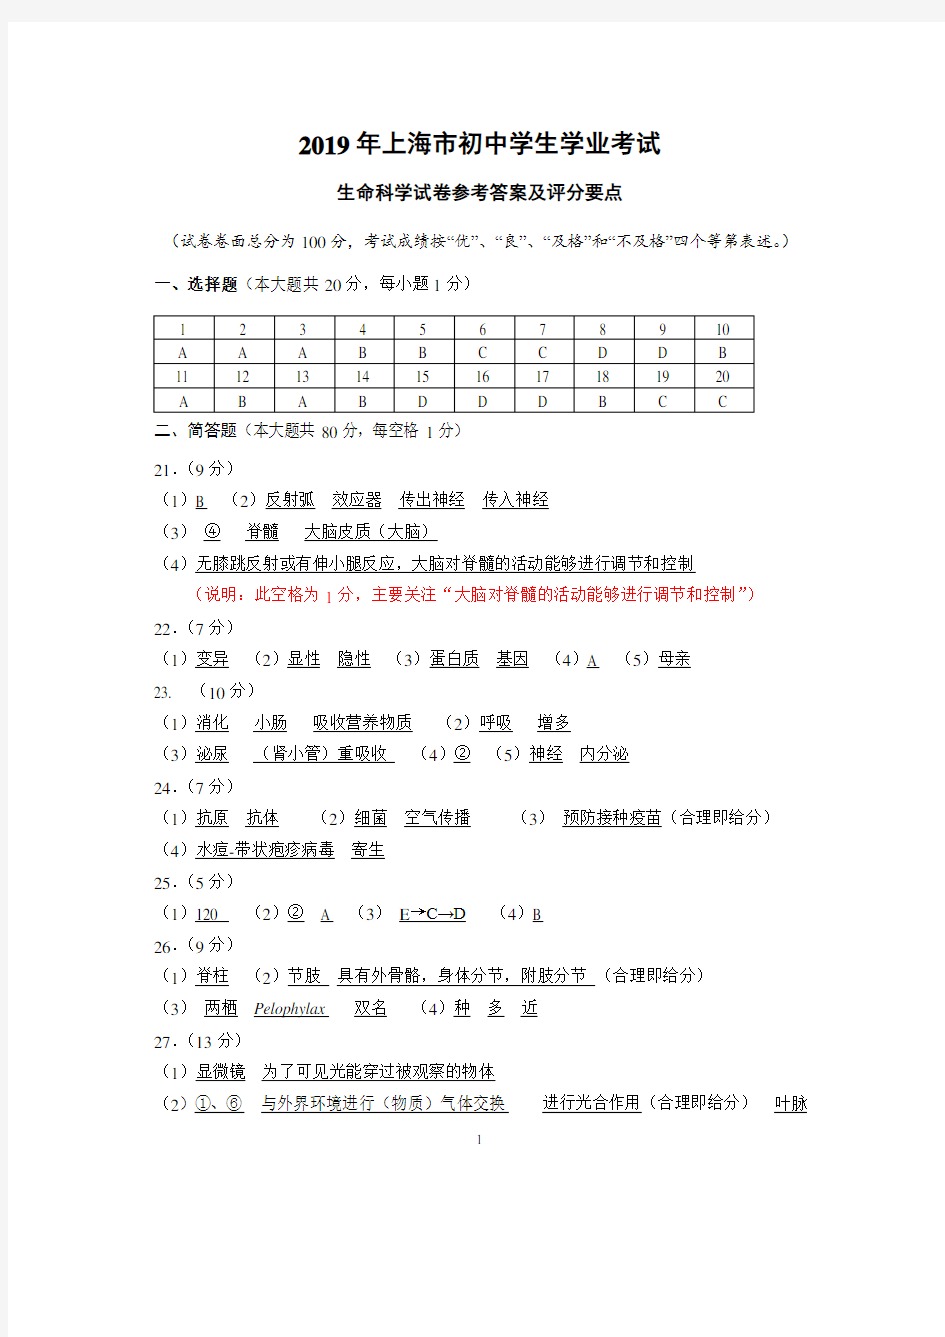 上海市初中学生学业考试生命科学参考答案及评分标准.pdf